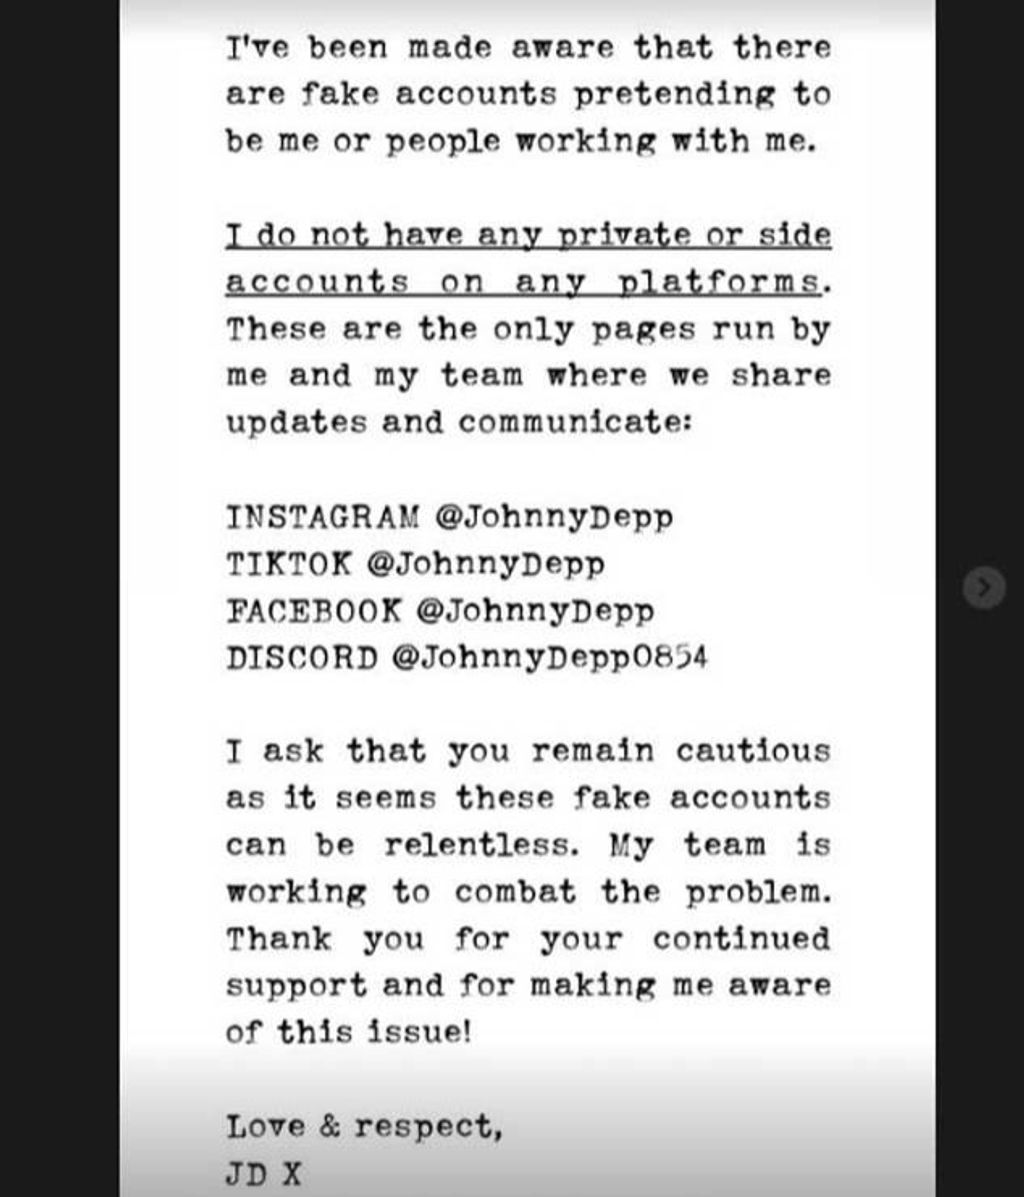 Johnny Depp lanza un comunicado en sus redes sociales: "Hay cuentas falsas haciéndose pasar por mí"